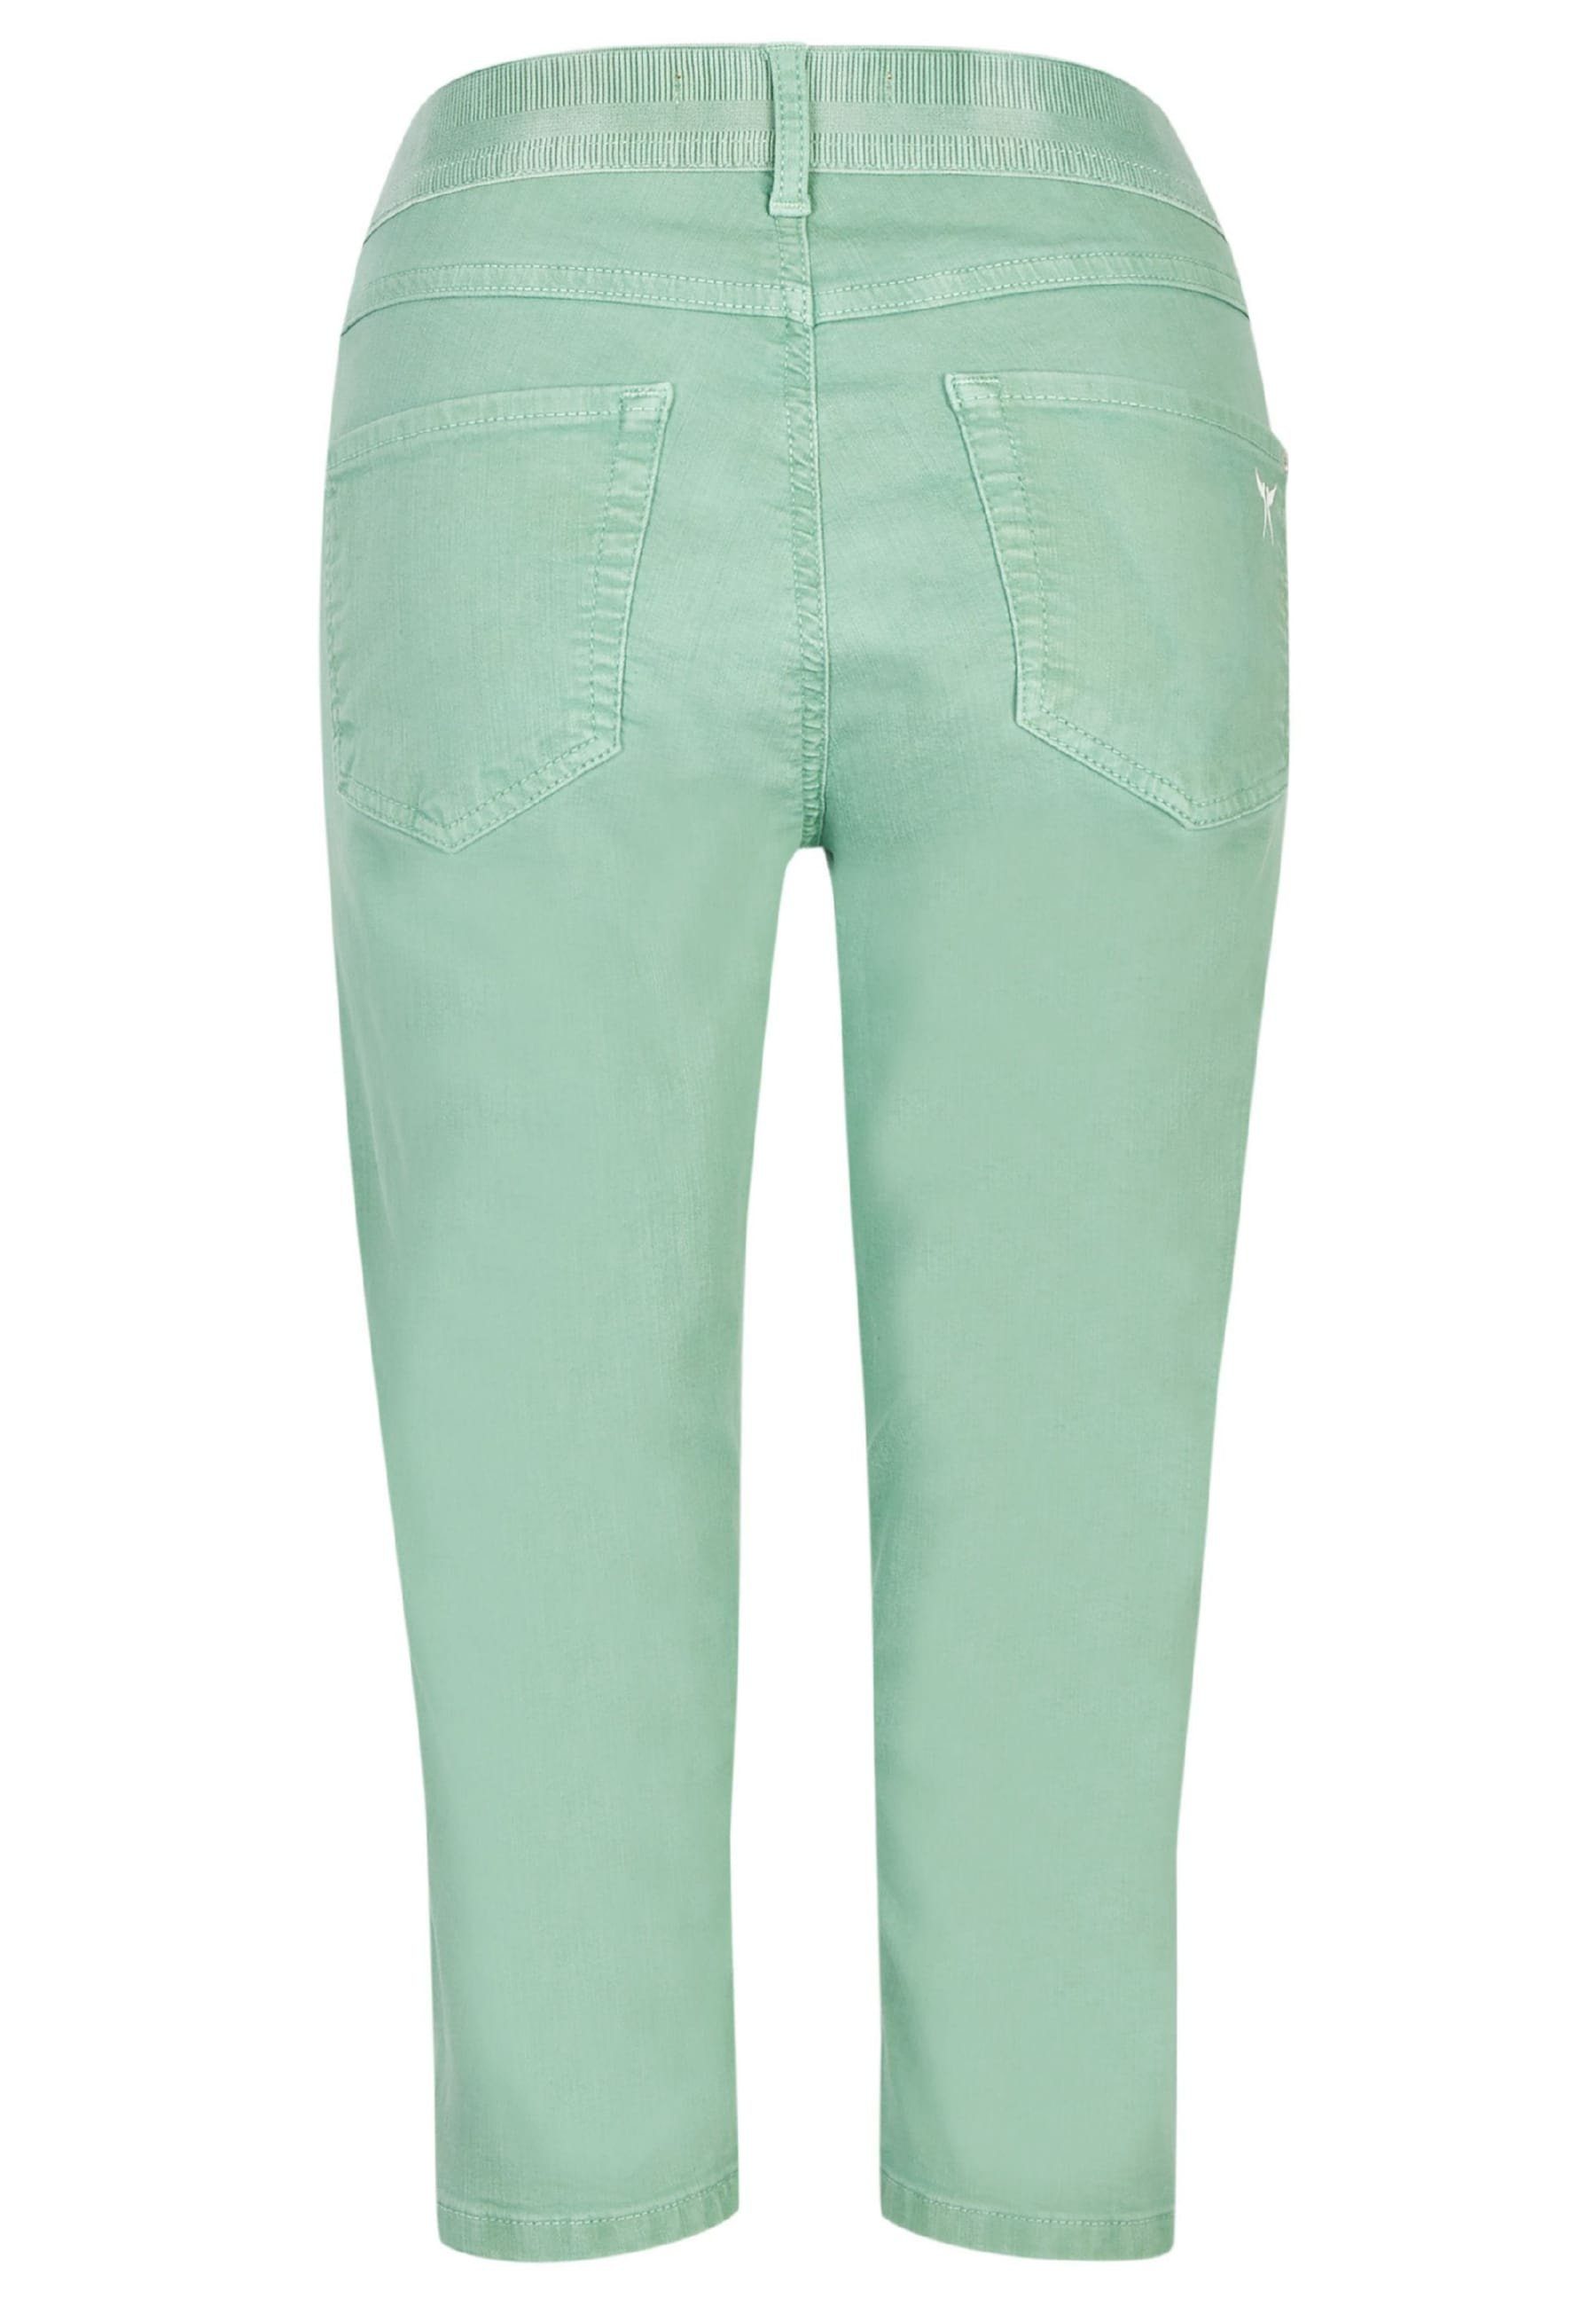 mit Jeans Slim-fit-Jeans grün Label-Applikationen Coloured ANGELS mit Capri Denim OSFA